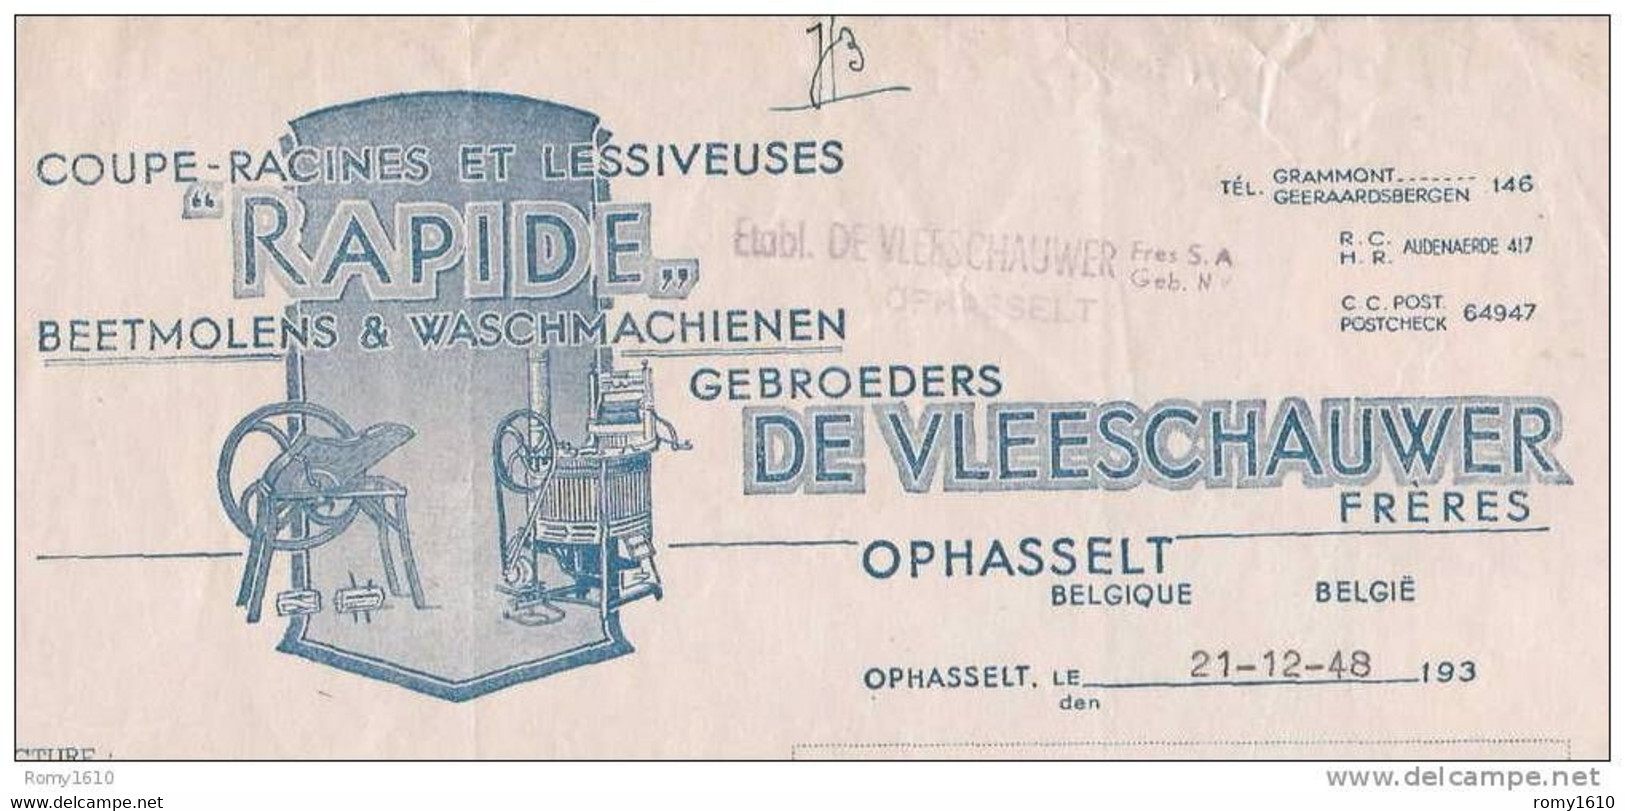 OPHASSELT - Superbe Facture Des Etablissements De Vleeschauwer - Coupe-Racines, Lessiveuses (1948) - Agricoltura